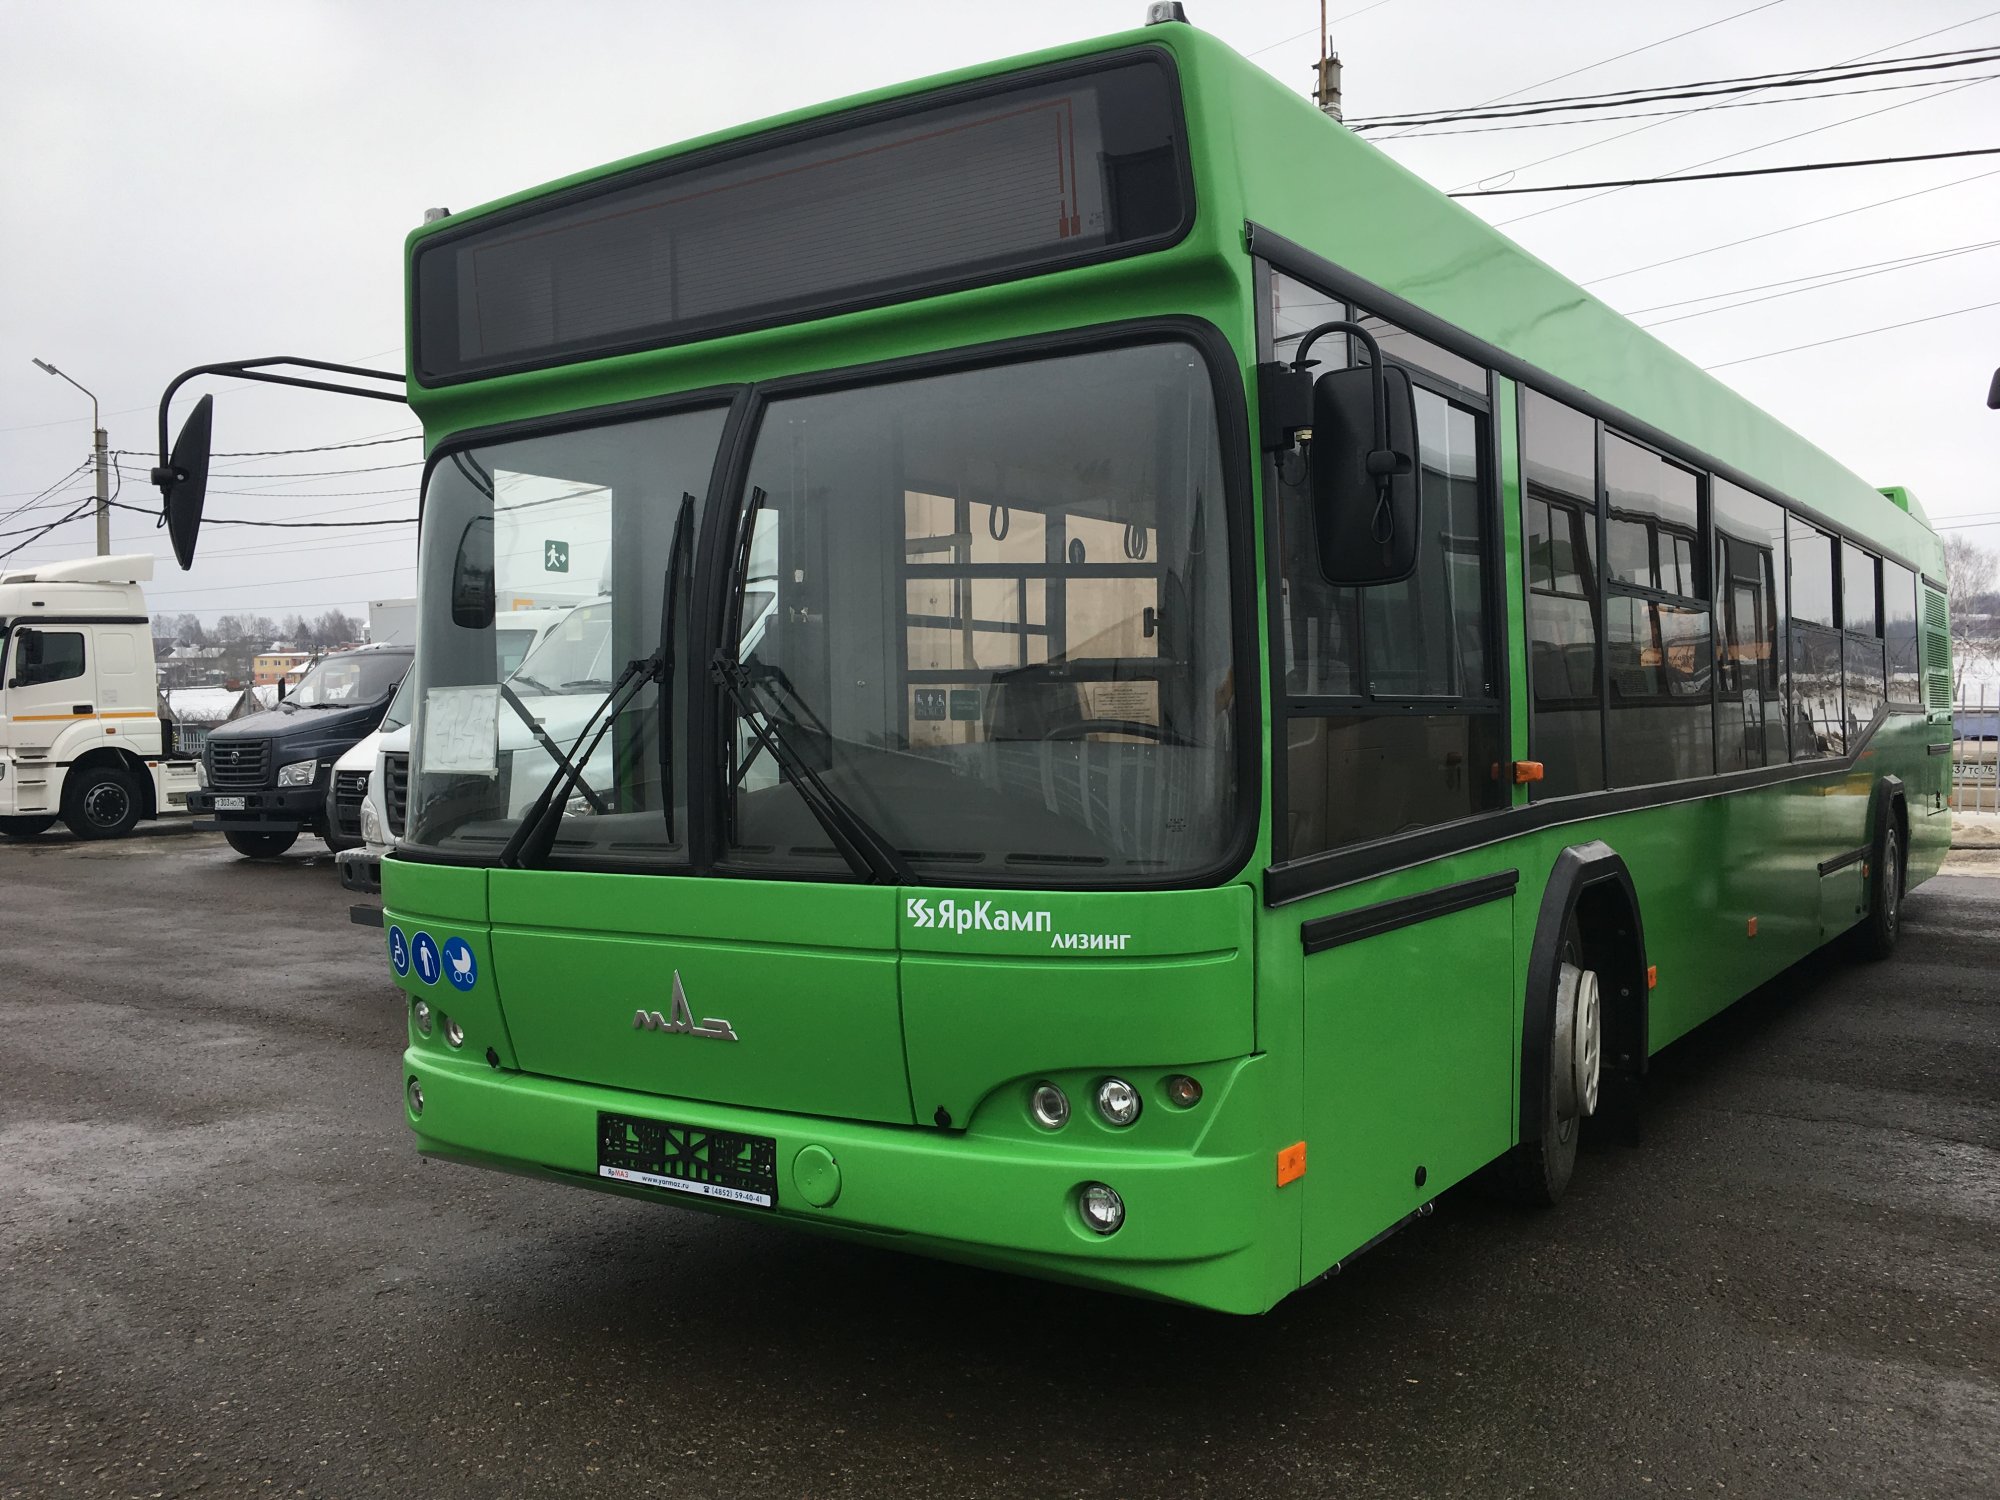 "ЯрКамп-Лизинг" поставил на правах финансовой аренды пригородный автобус МАЗ 103586